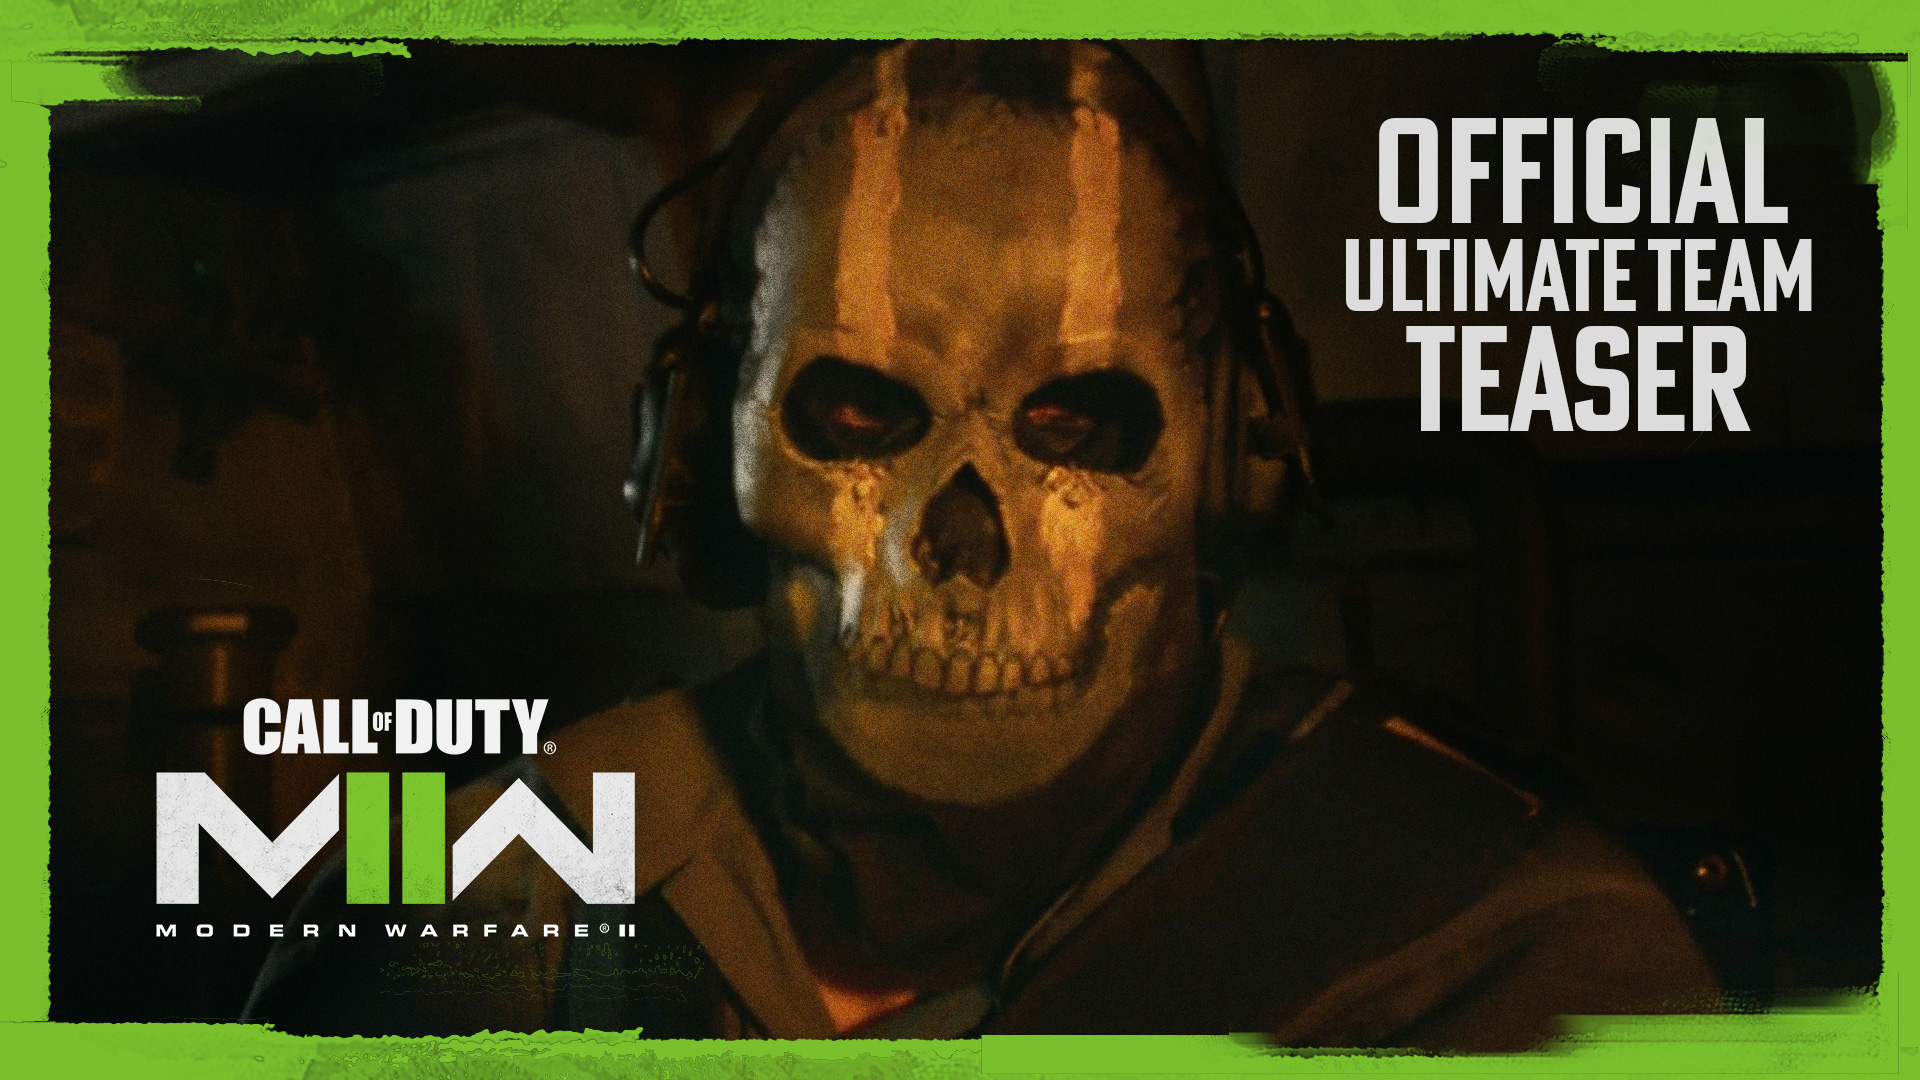 Official “Ultimate Team” Teaser of Duty: Modern Warfare II